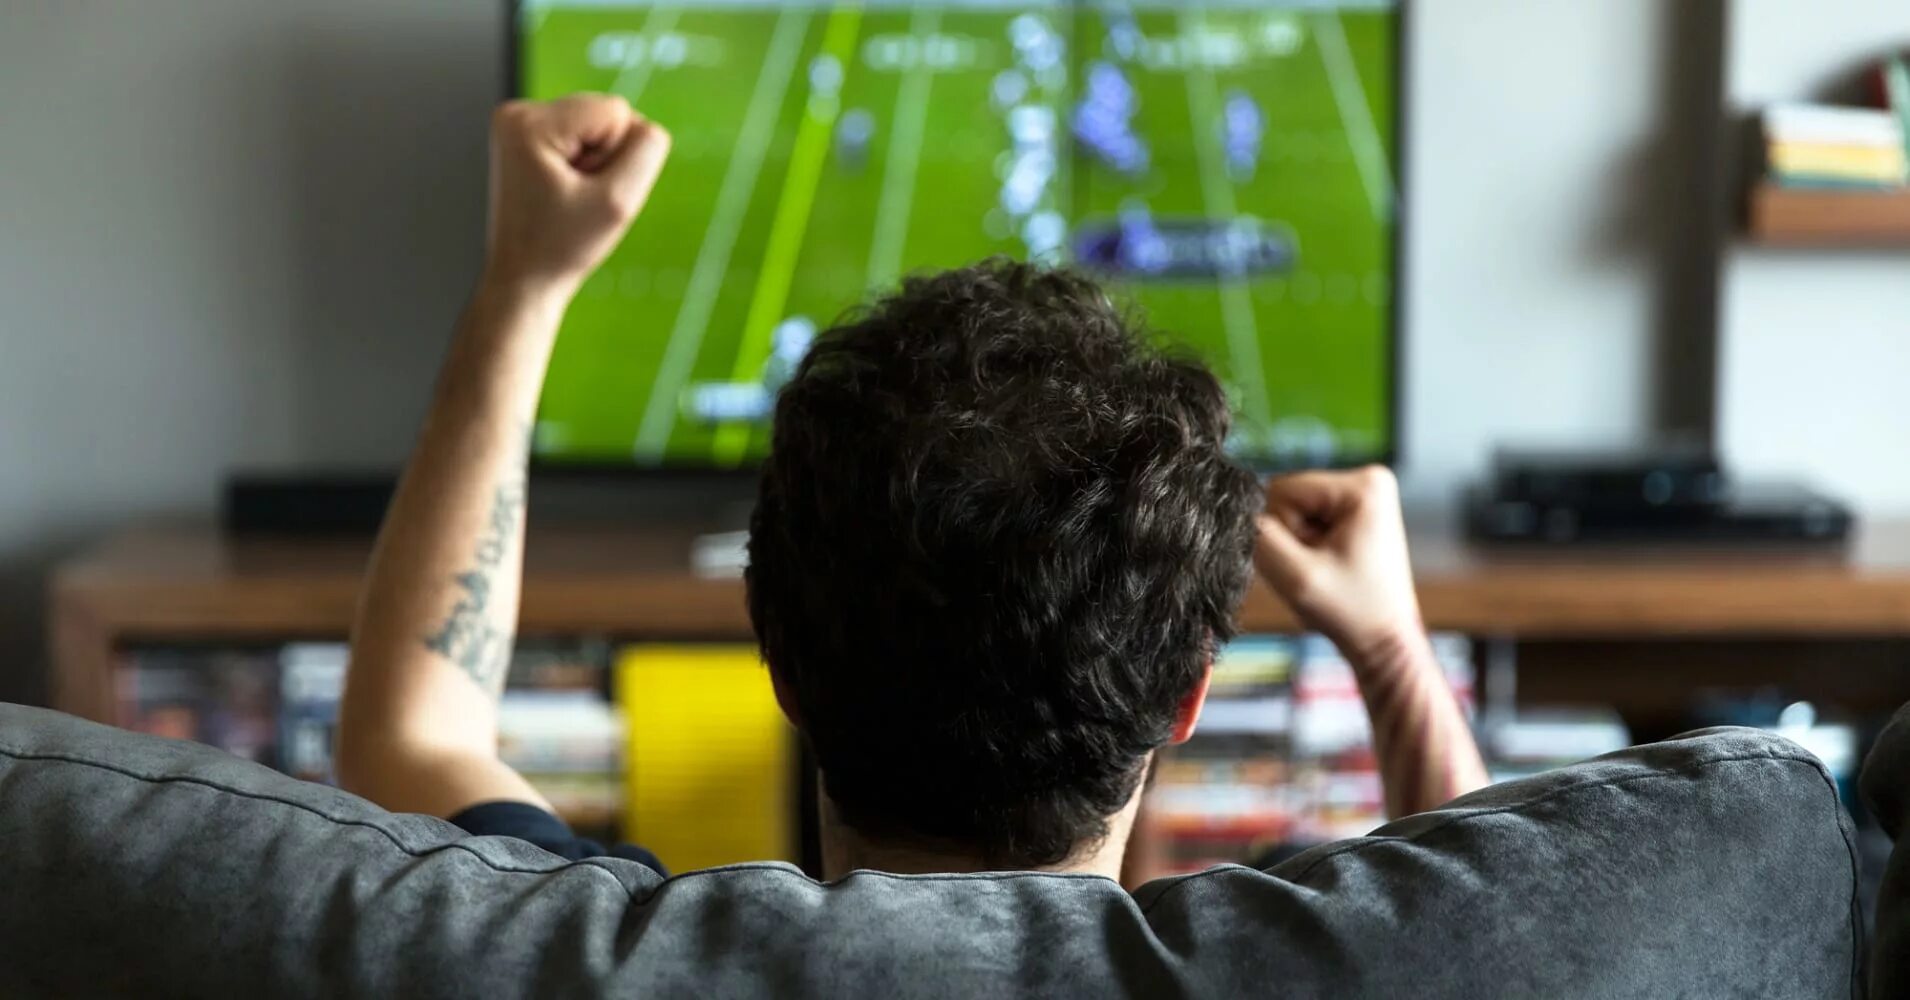 Футбол по телевизору. Человек телевизор. Человек перед телевизором. Телевизор футбол.